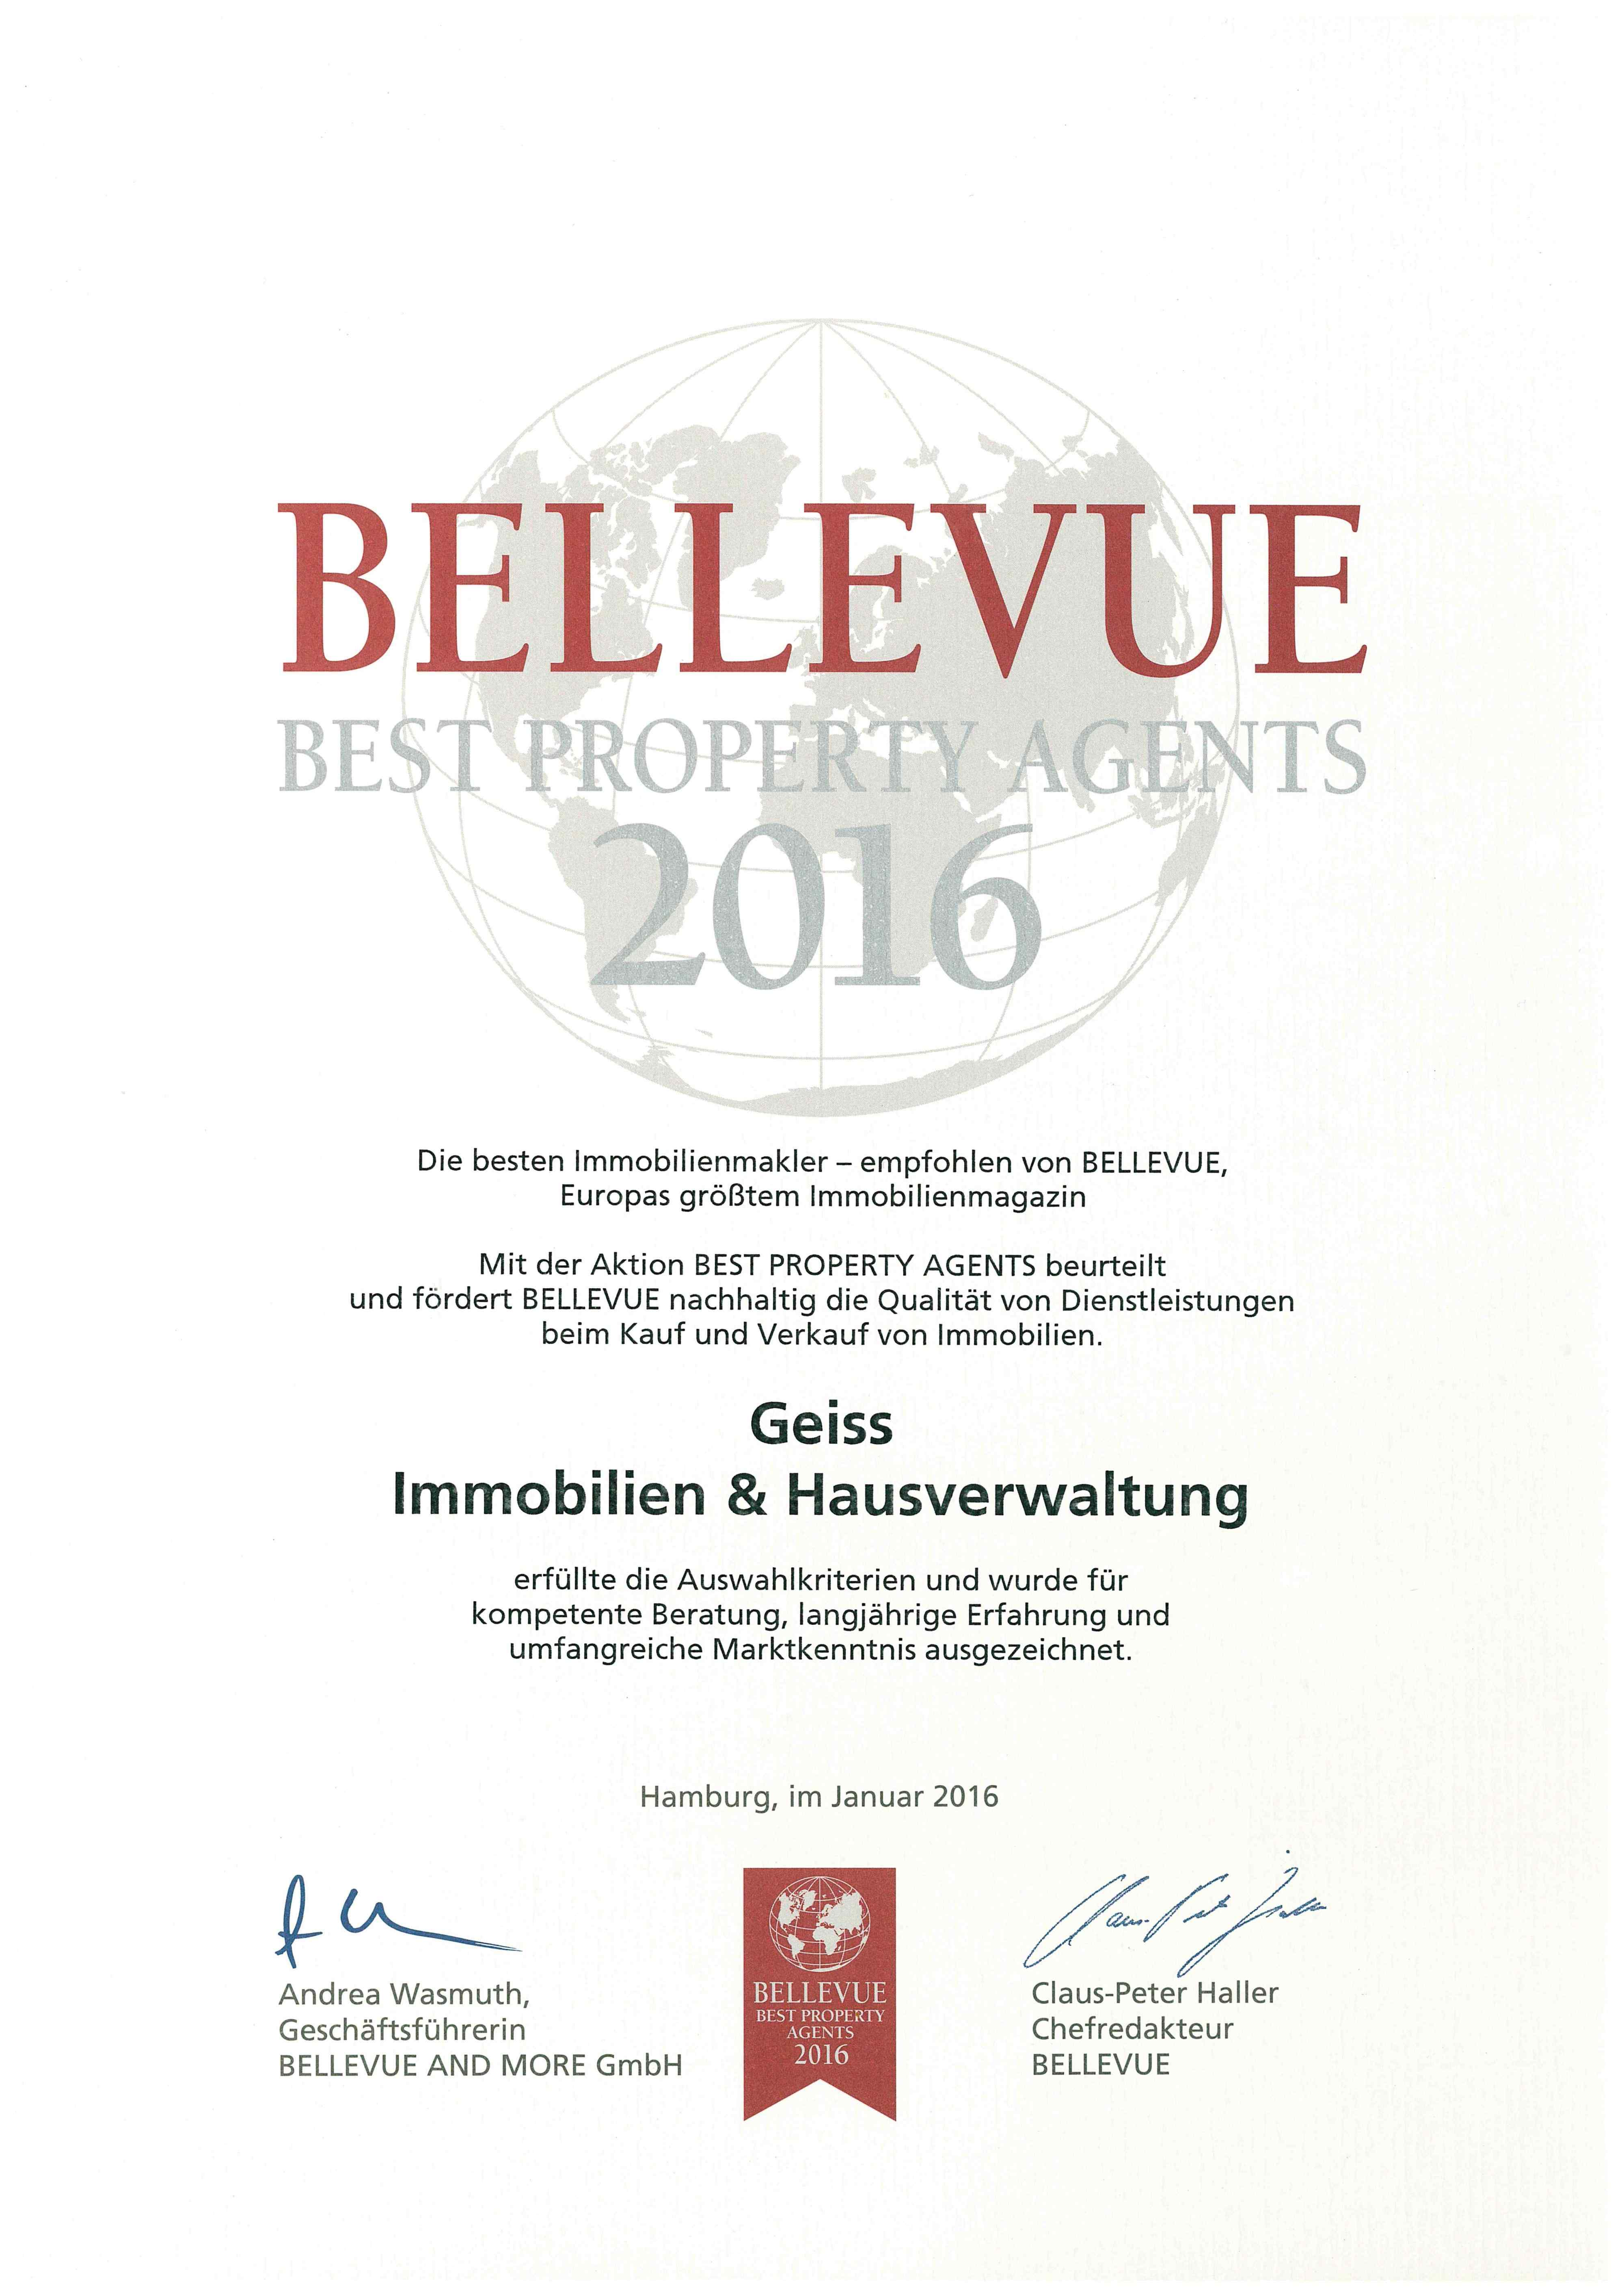 Bellevue Best Property Agents 2016